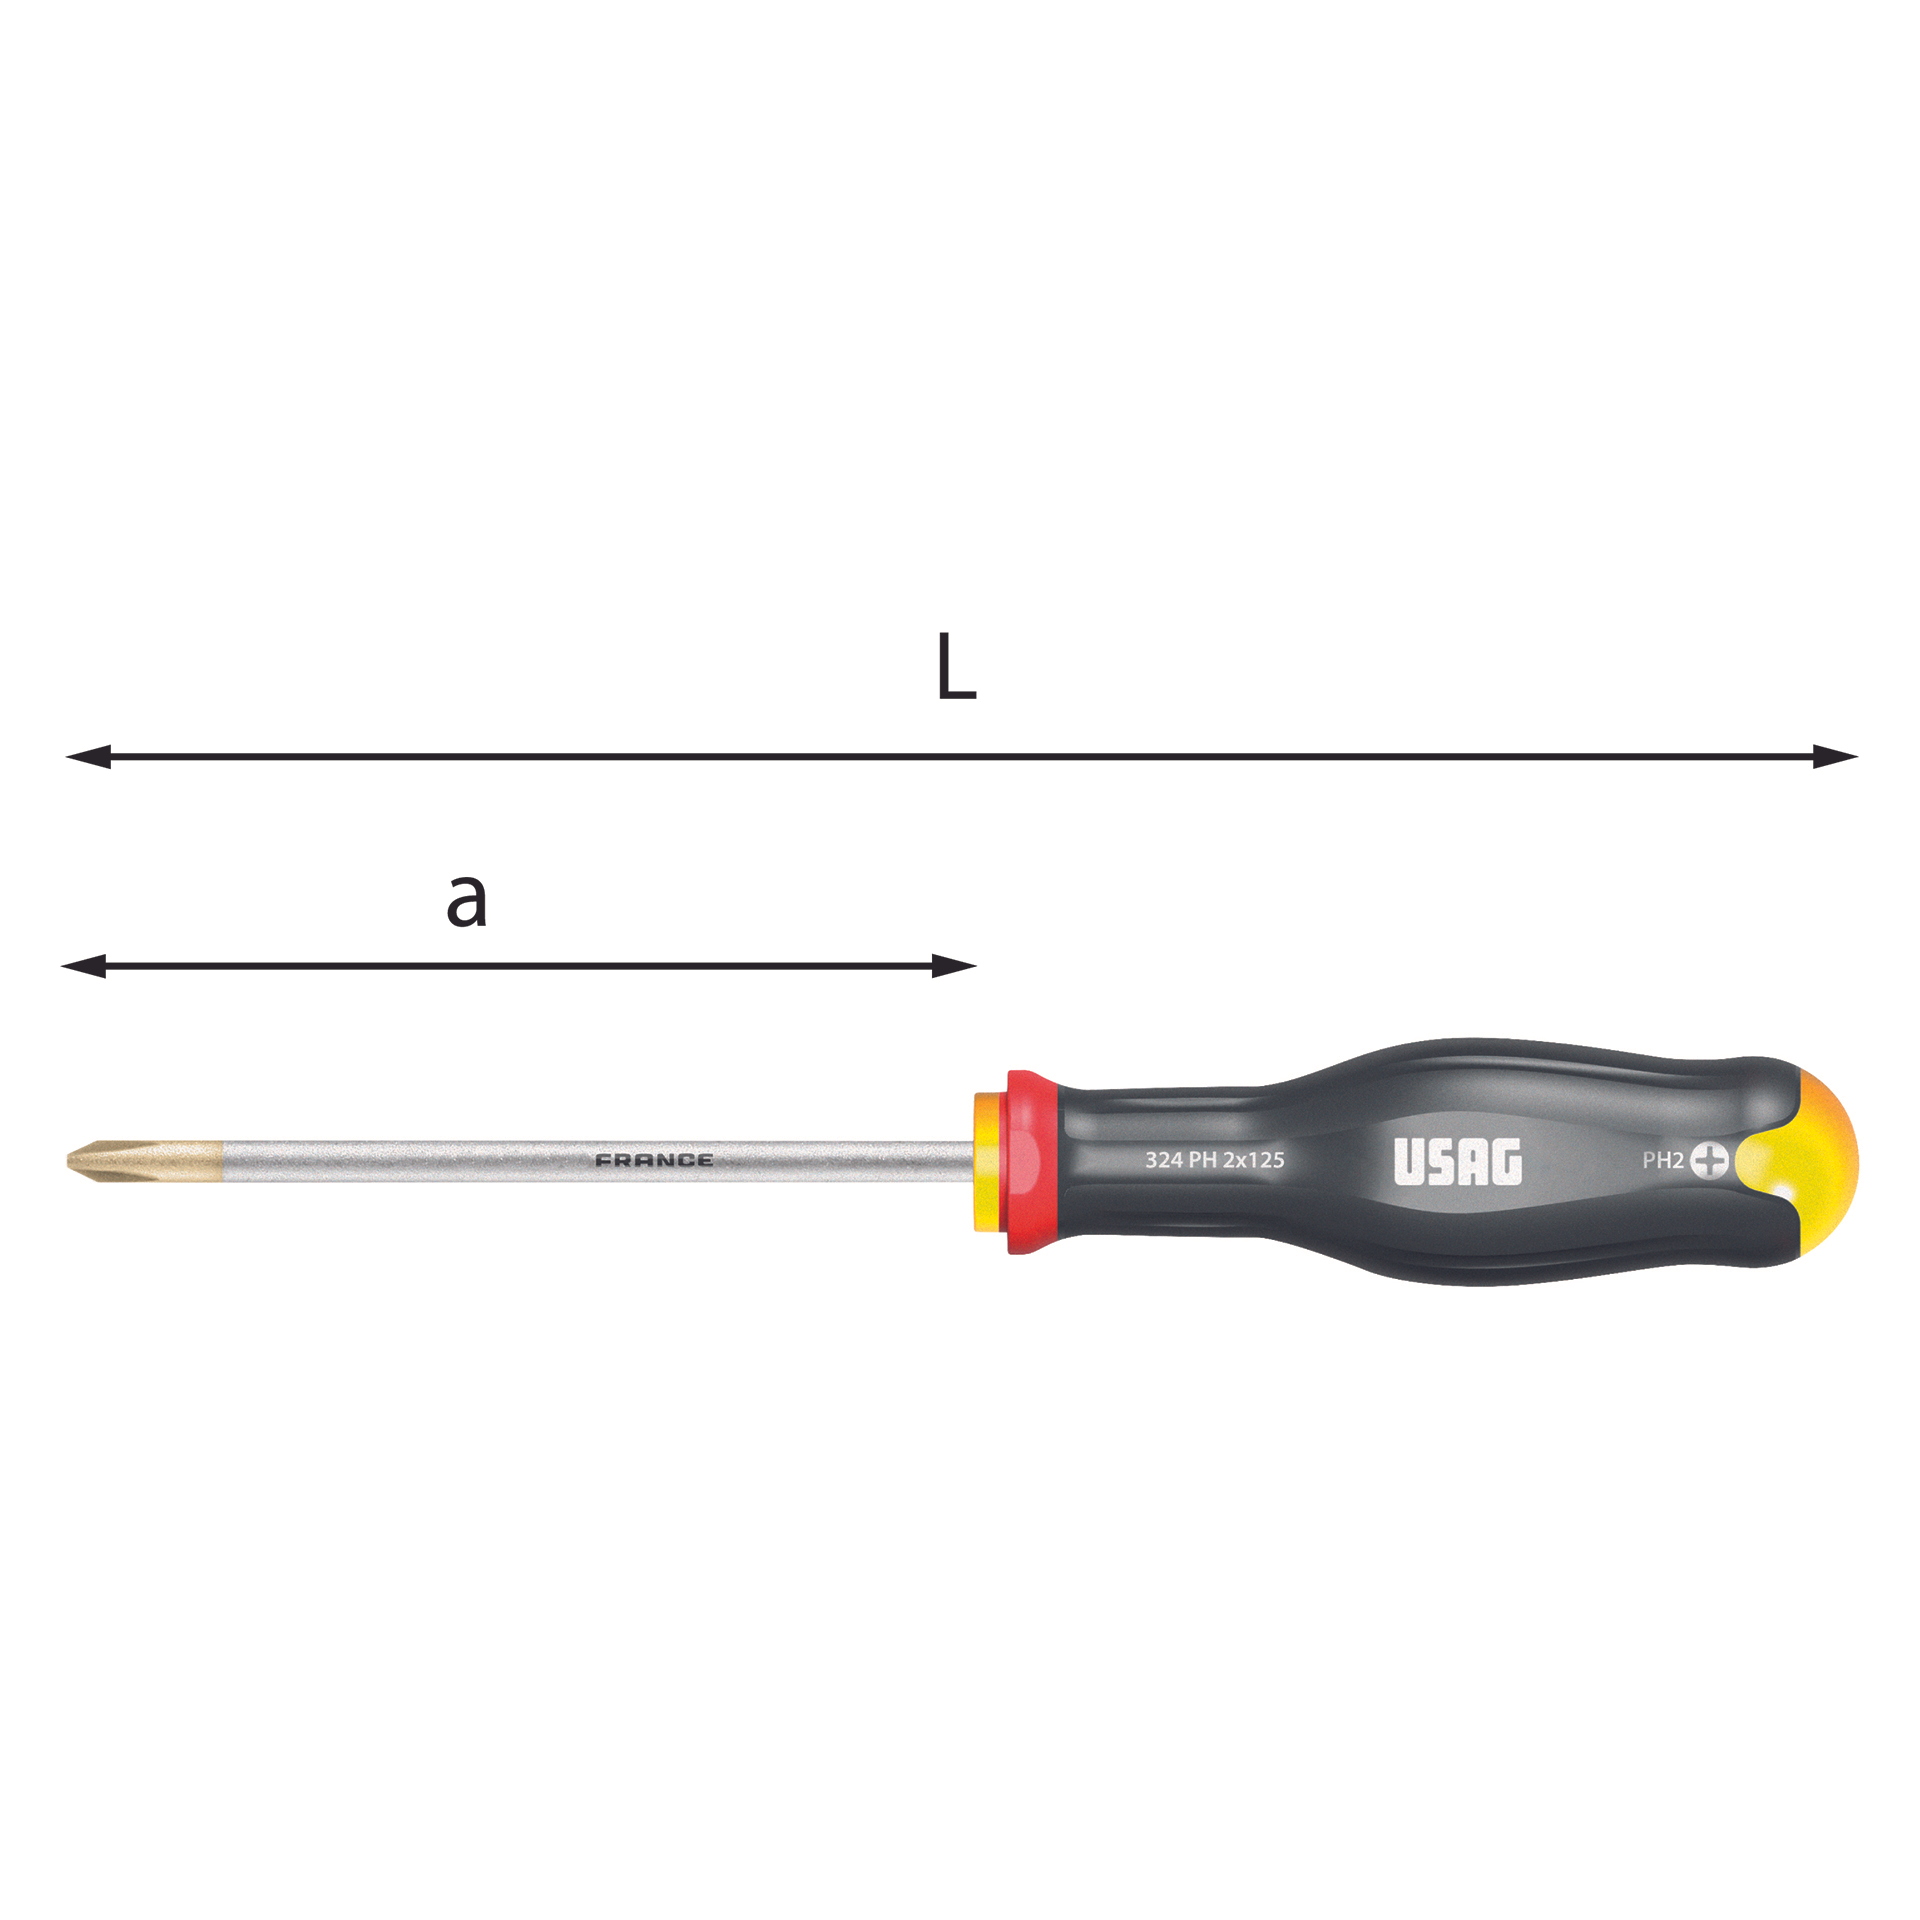 Screwdrivers fot Phillips screws (3x150-4x200) - Usag 324 PH